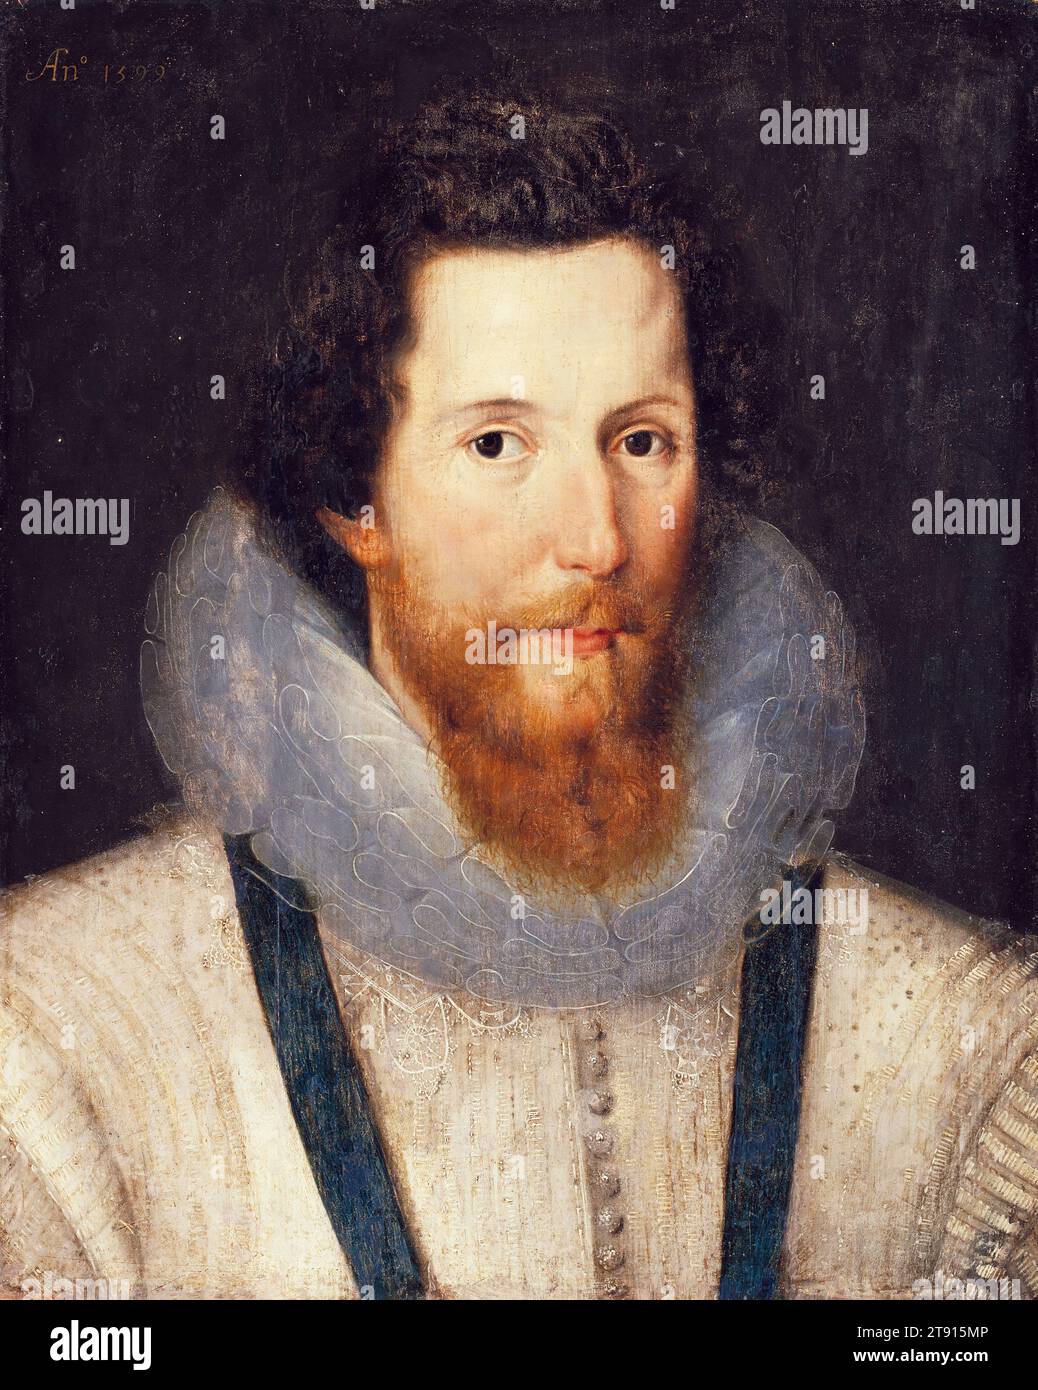 Porträt von Robert Devereux, 2. Earl of Essex, 1599, Studio von Marcus Gheeraerts the Younger, Flämisch, 1561/62–1636, 19 1/2 x 15 1/2 cm. (49,53 x 39,37 cm), Öl auf Platte, England, 16. Jahrhundert, der Earl of Essex war ein englischer Adliger und ein Favorit von Königin Elisabeth I. Politisch ambitioniert und ein engagierter General, wurde er nach einem schlechten Feldzug in Irland während des Neunjährigen Krieges 1599 unter Hausarrest gestellt. 1601 führte er einen gescheiterten Staatsstreich gegen die Regierung an und wurde wegen Hochverrats hingerichtet Stockfoto